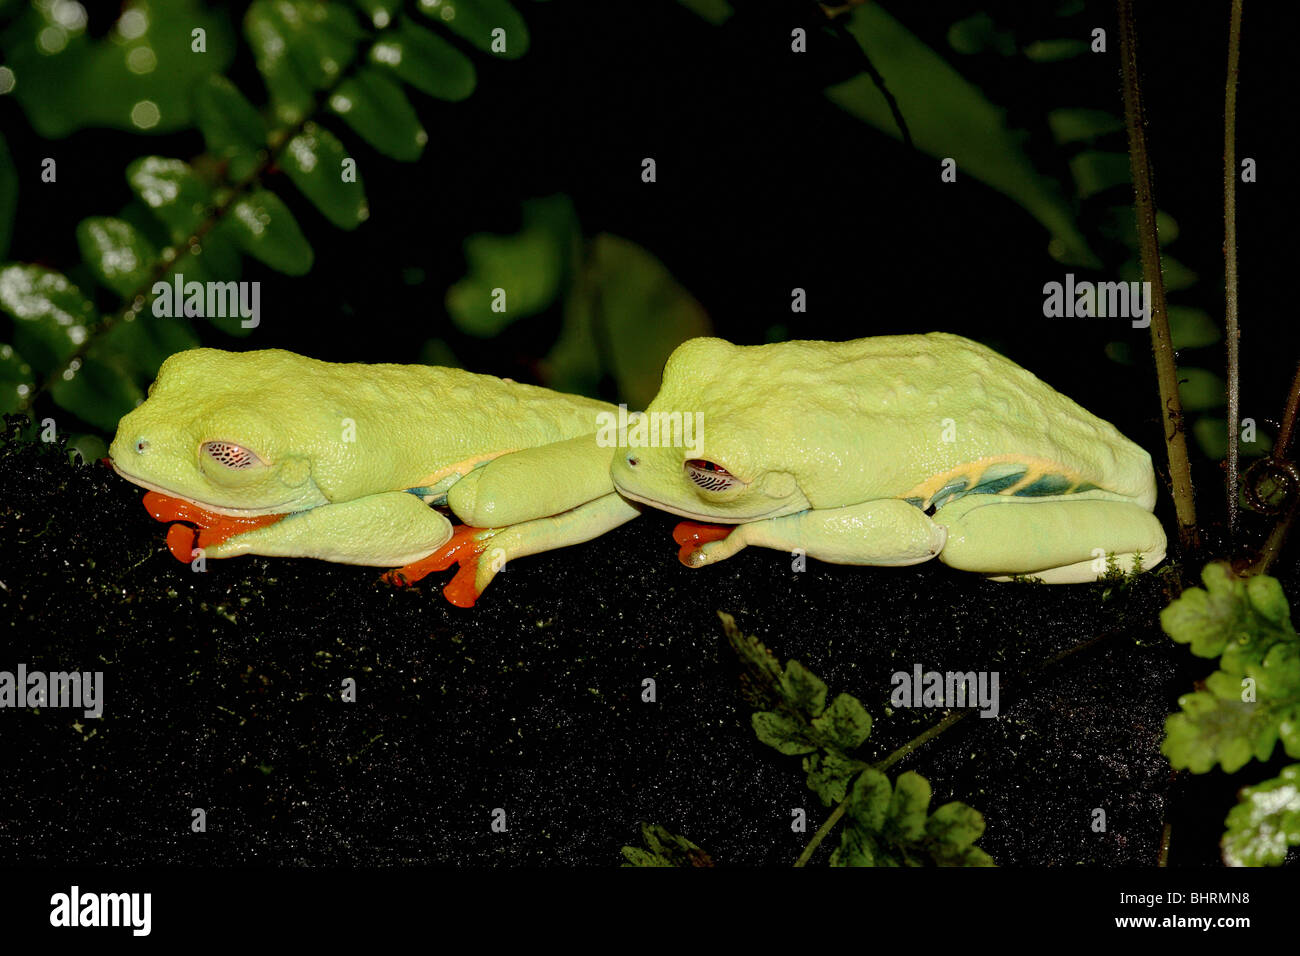 Grenouille d'arbre à yeux rouges (Agalychnis callidryas). Deux grenouilles somnin. Costa Rica Banque D'Images